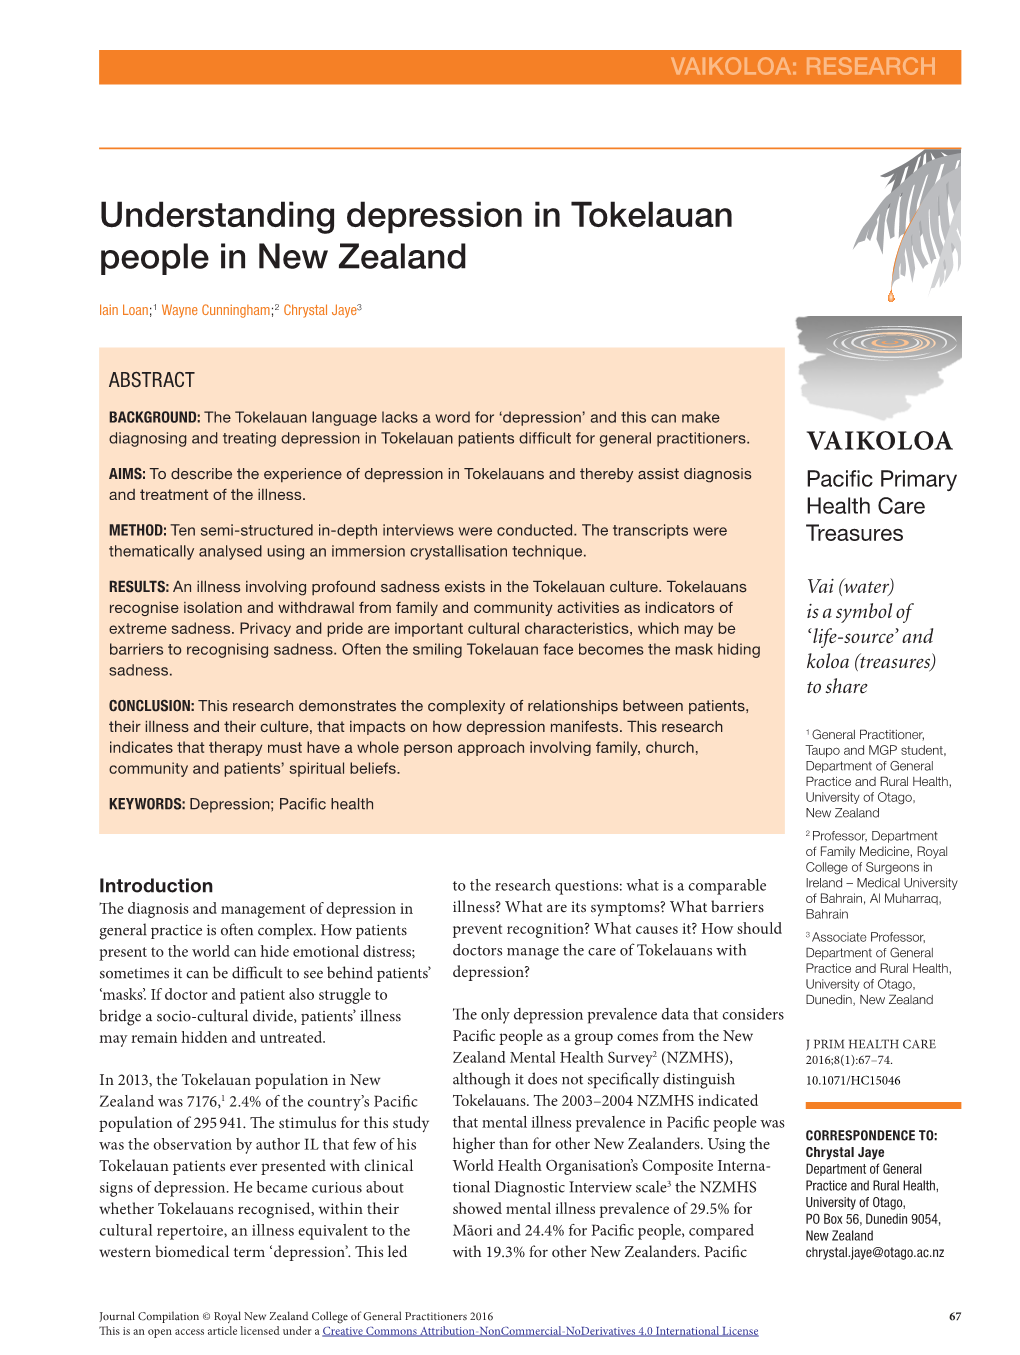 Understanding Depression in Tokelauan People in New Zealand